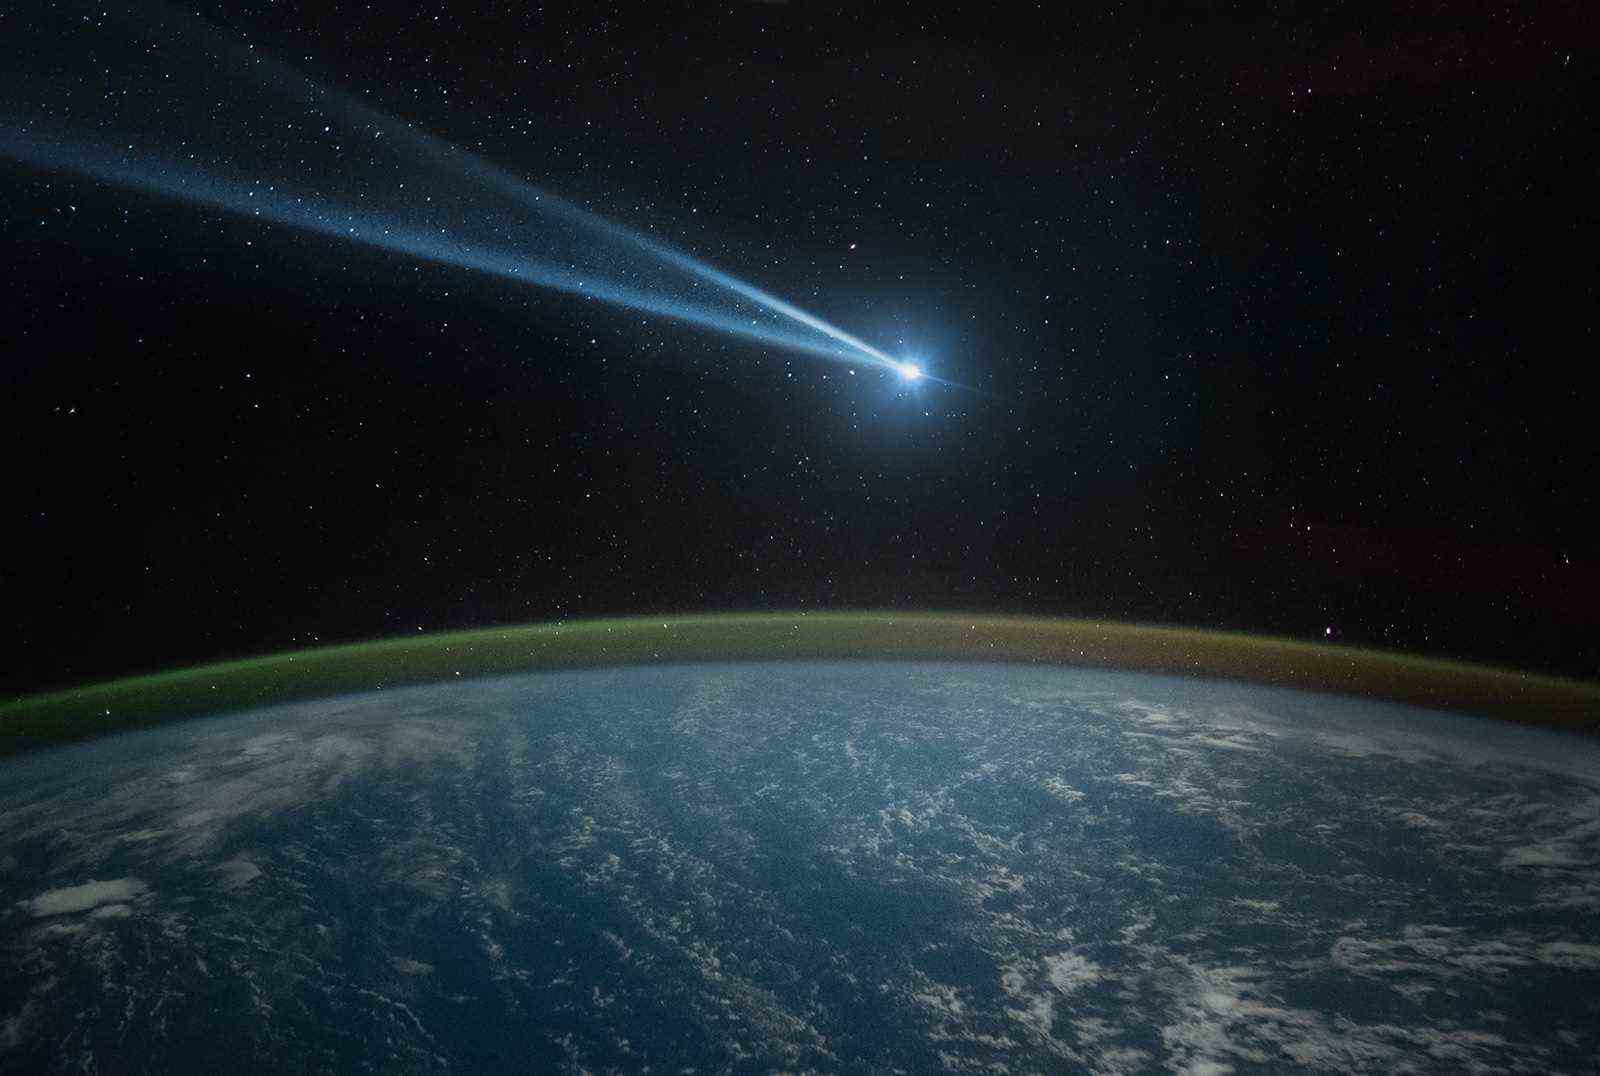 Komet, Asteroid, Meteorit fliegt zum Planeten Erde